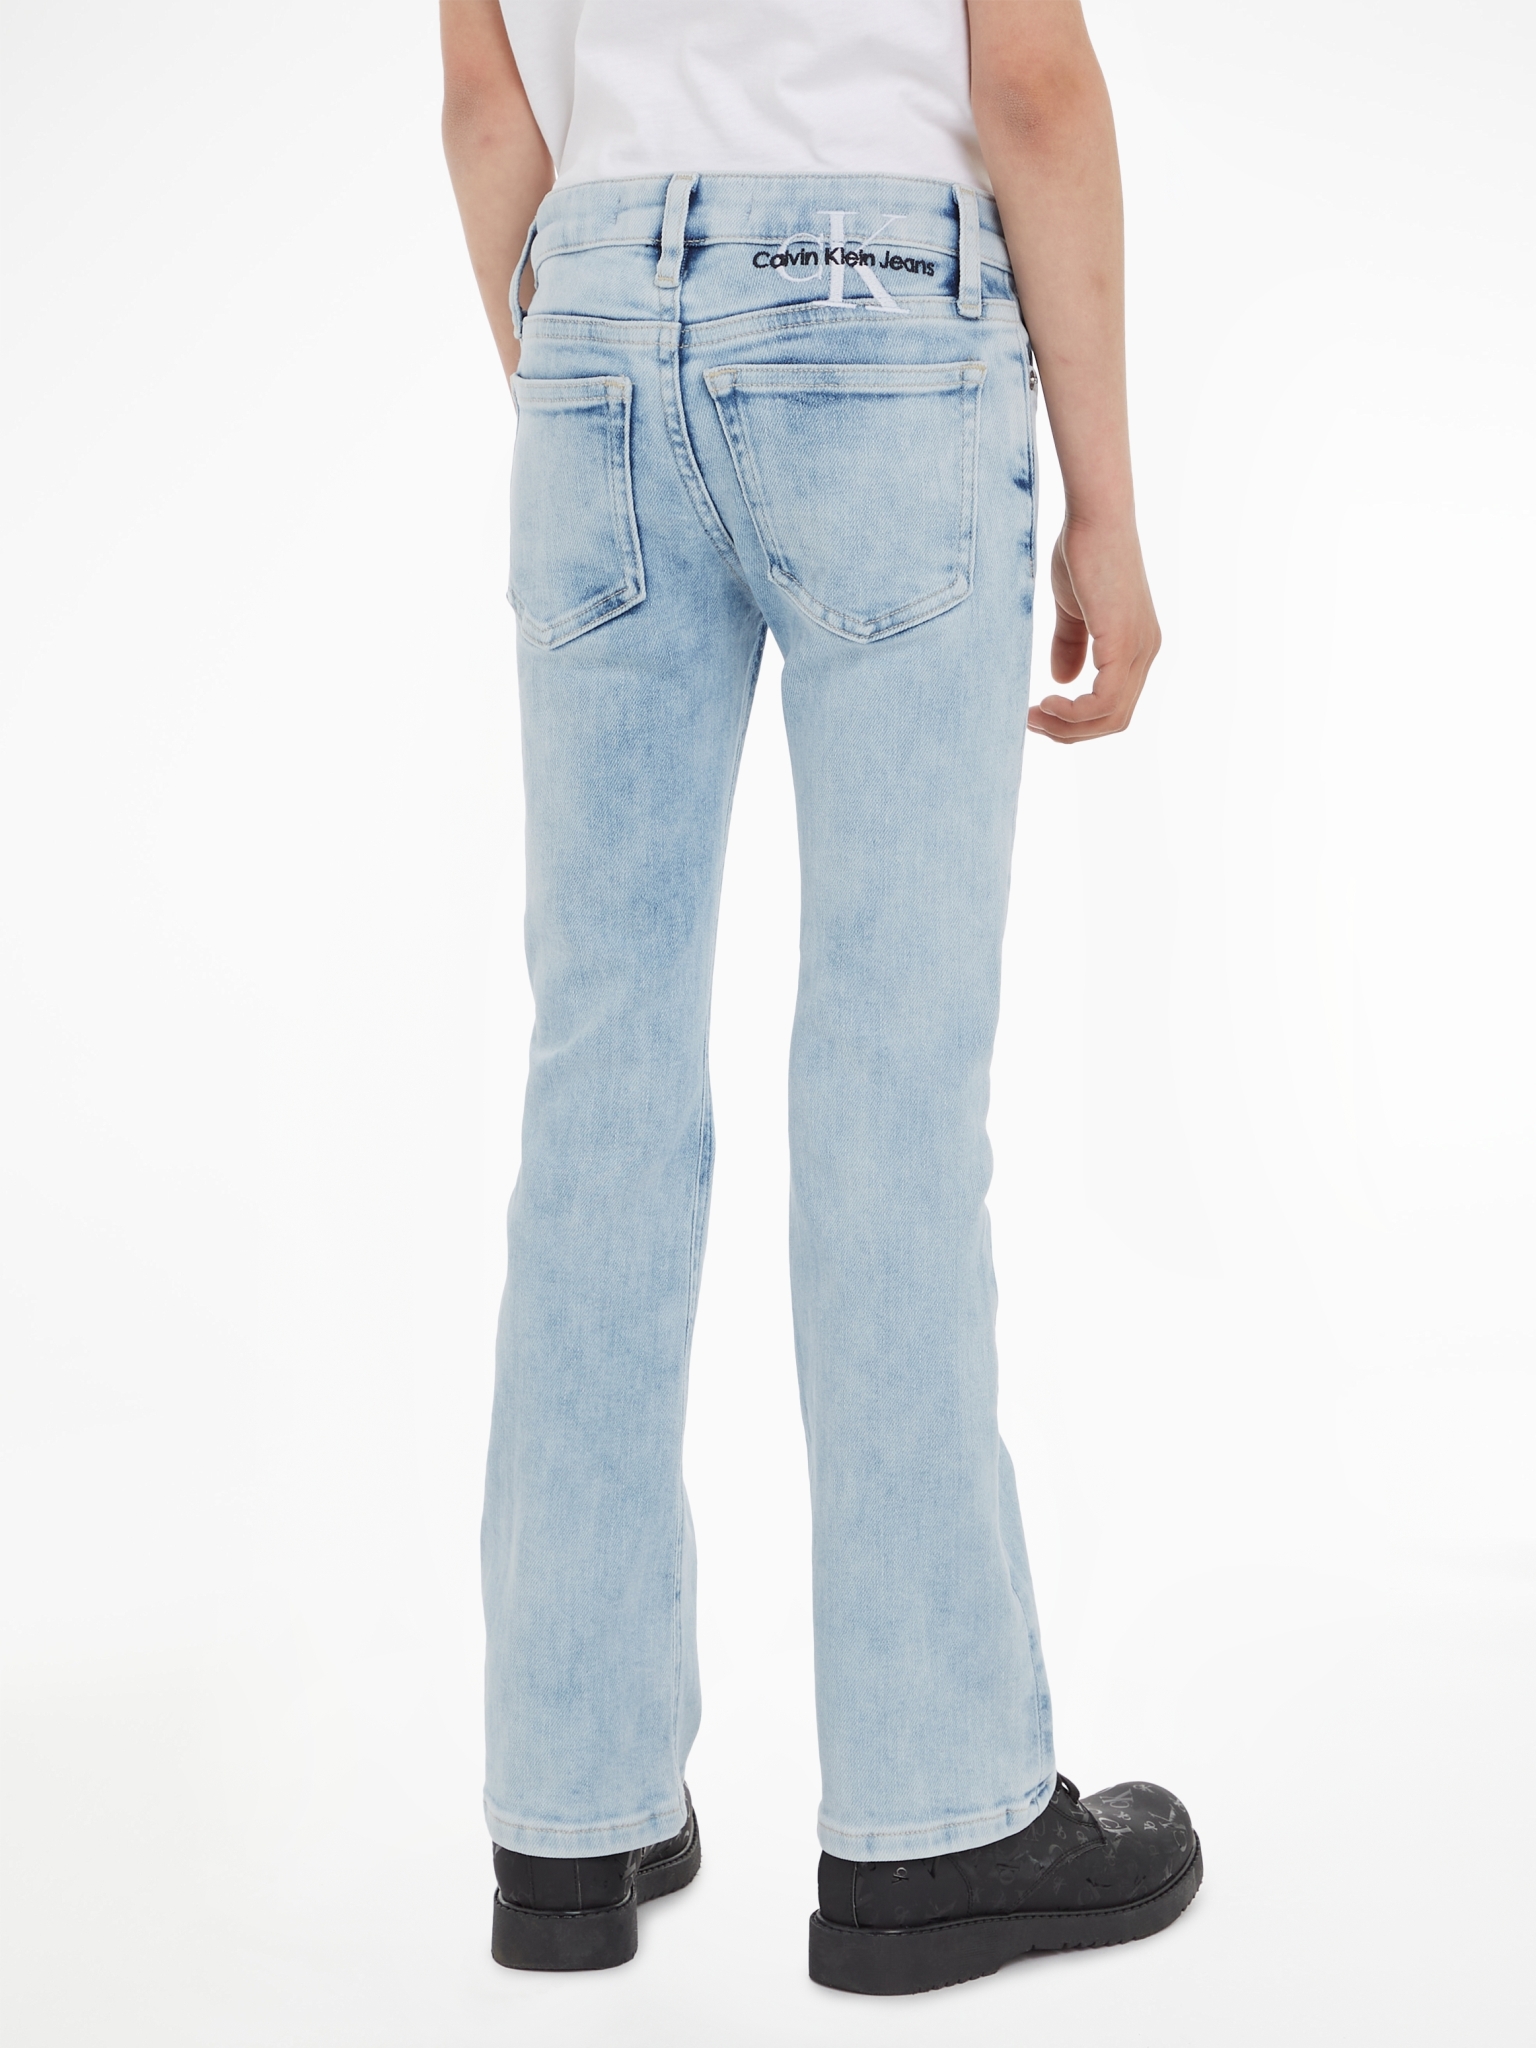 CALVIN KLEIN Jeans 10728846 kaufen | WÖHRL